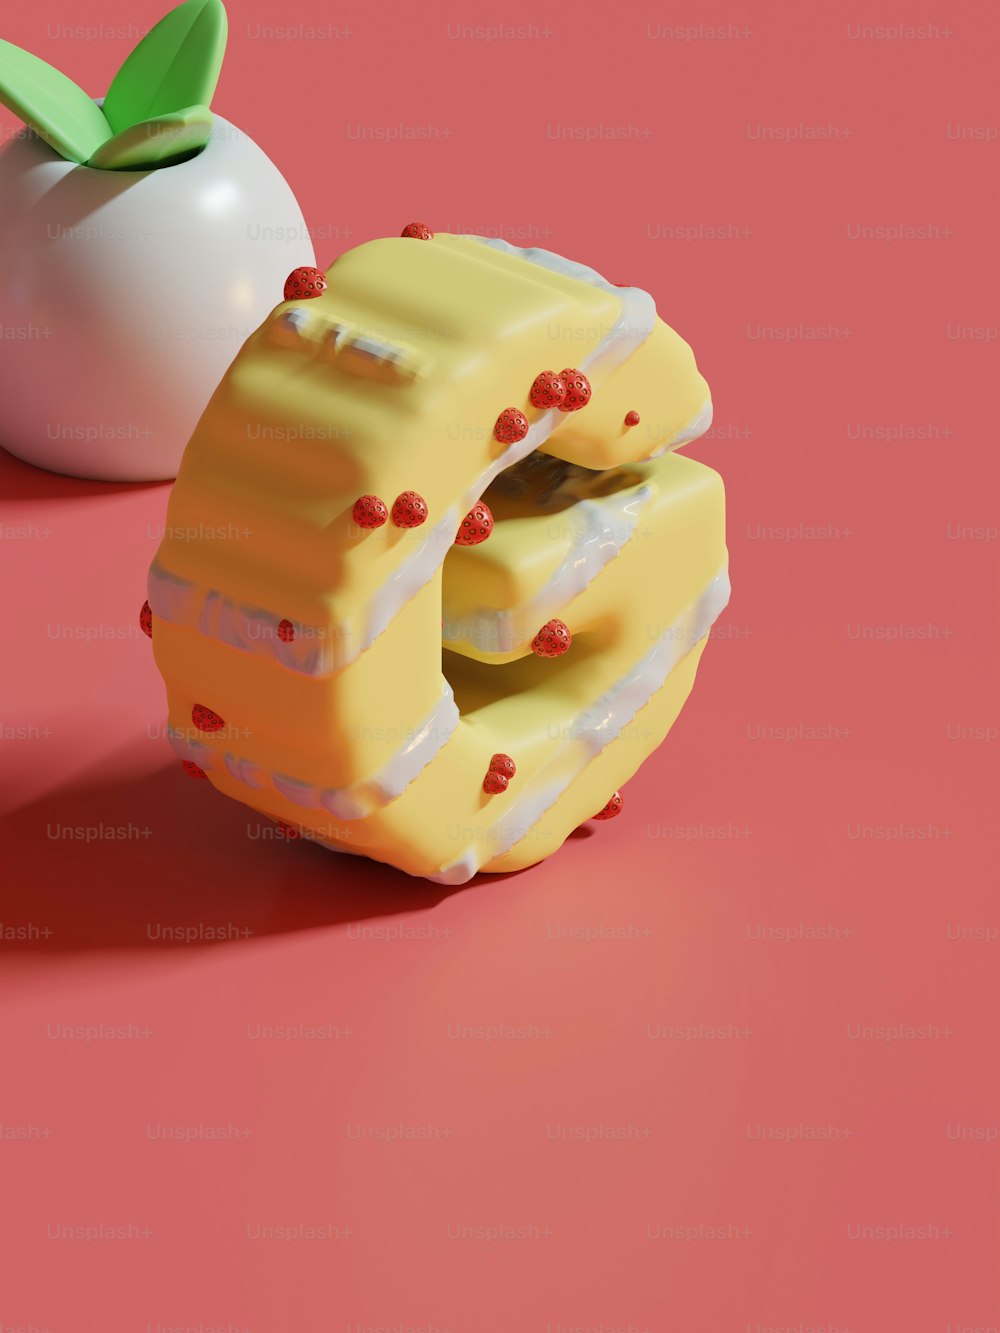 um pedaço de bolo ao lado de uma maçã em uma superfície rosa